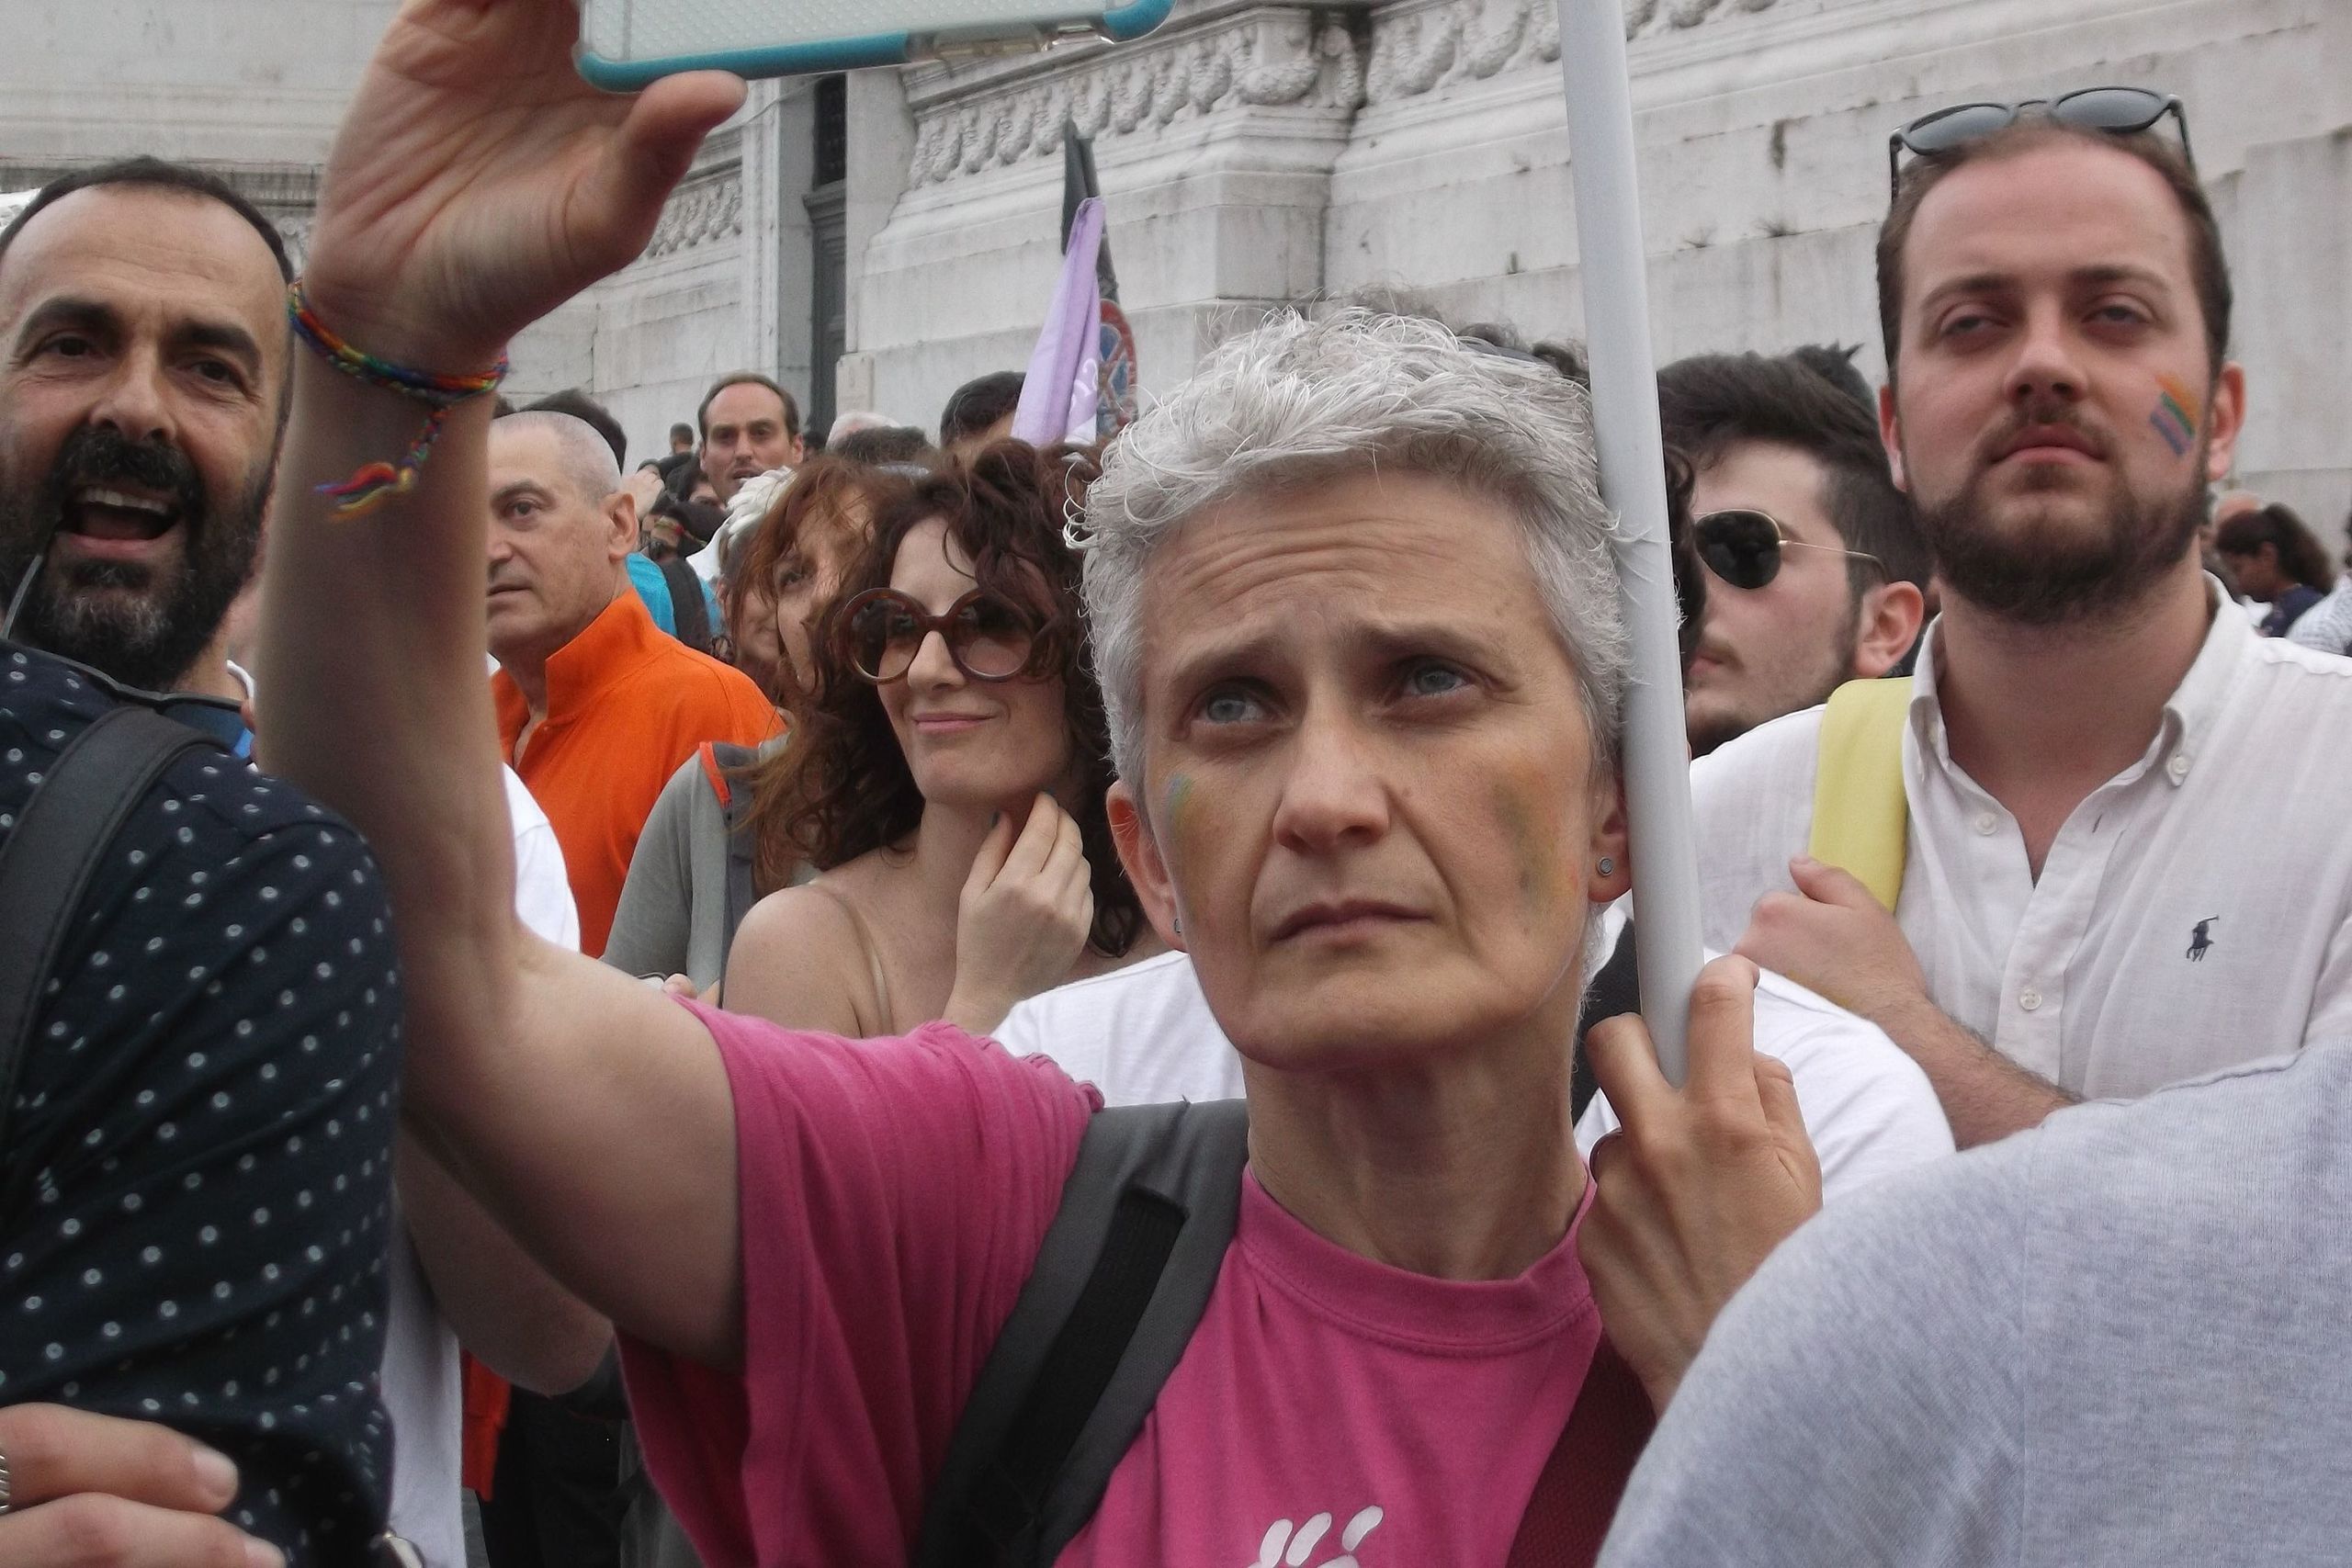 Figli di coppie gay, Grassadonia (Si): "Dal governo una crociata contro le famiglie arcobaleno"